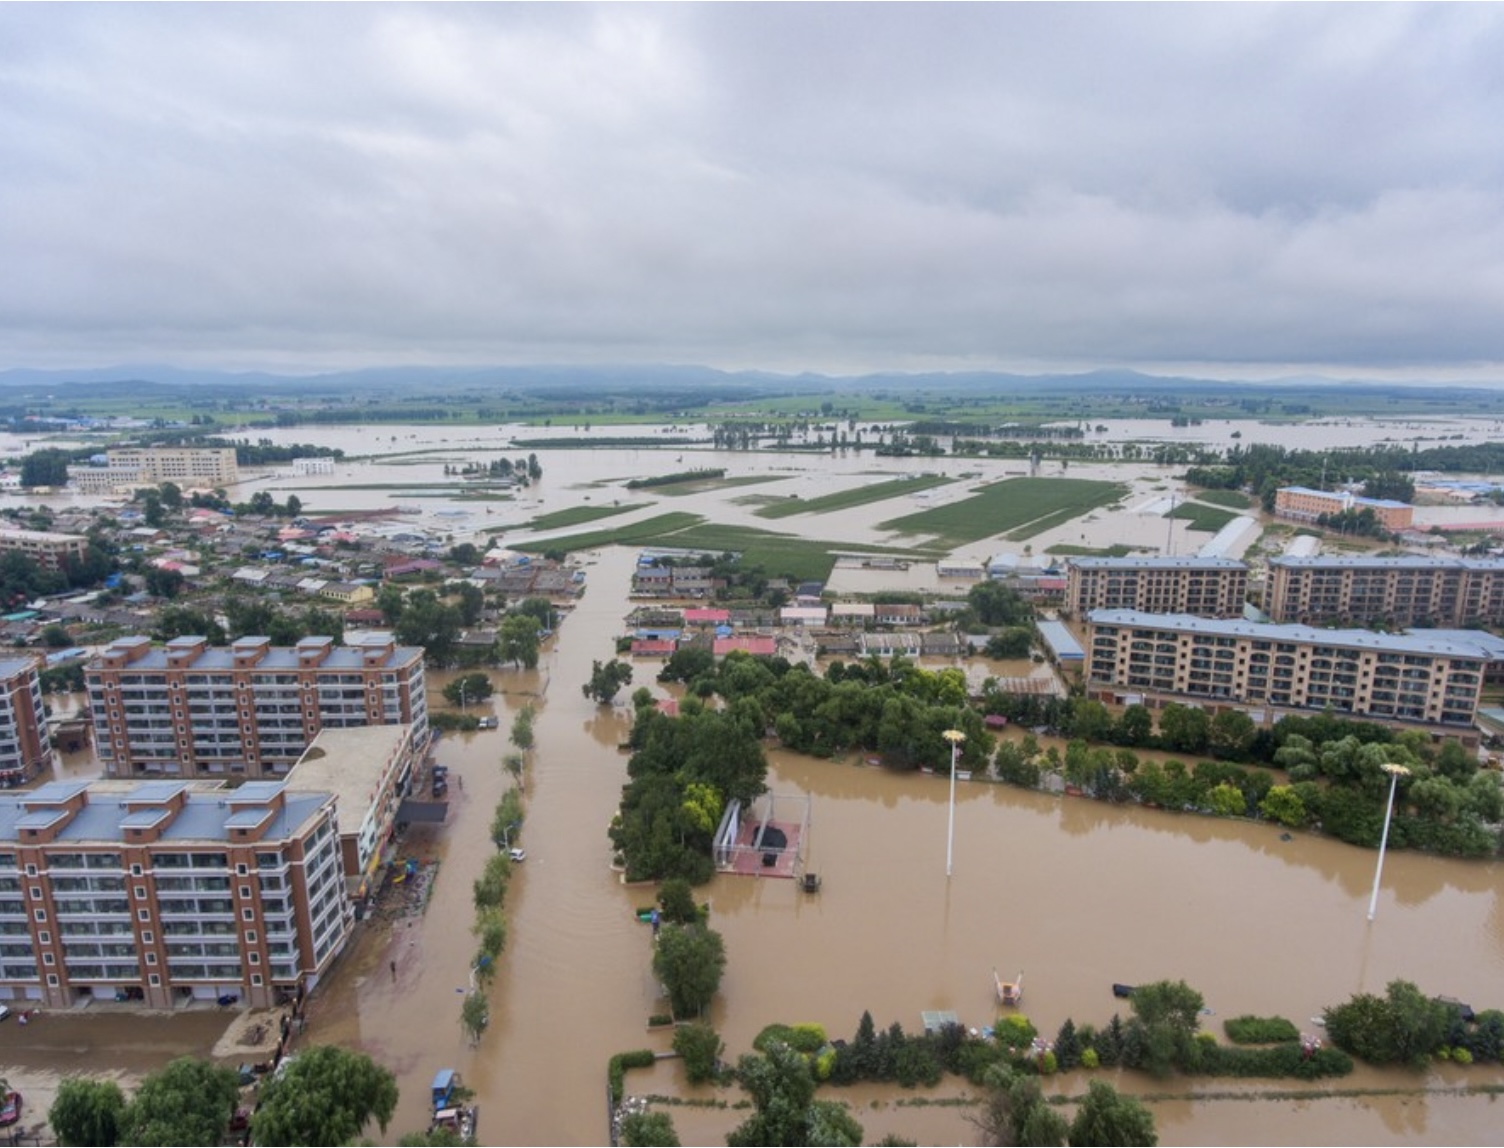 Lũ lụt ở huyện Duyên Thọ, Cáp Nhĩ Tân, tỉnh Hắc Long Giang, Trung Quốc. Ảnh: Xinhua